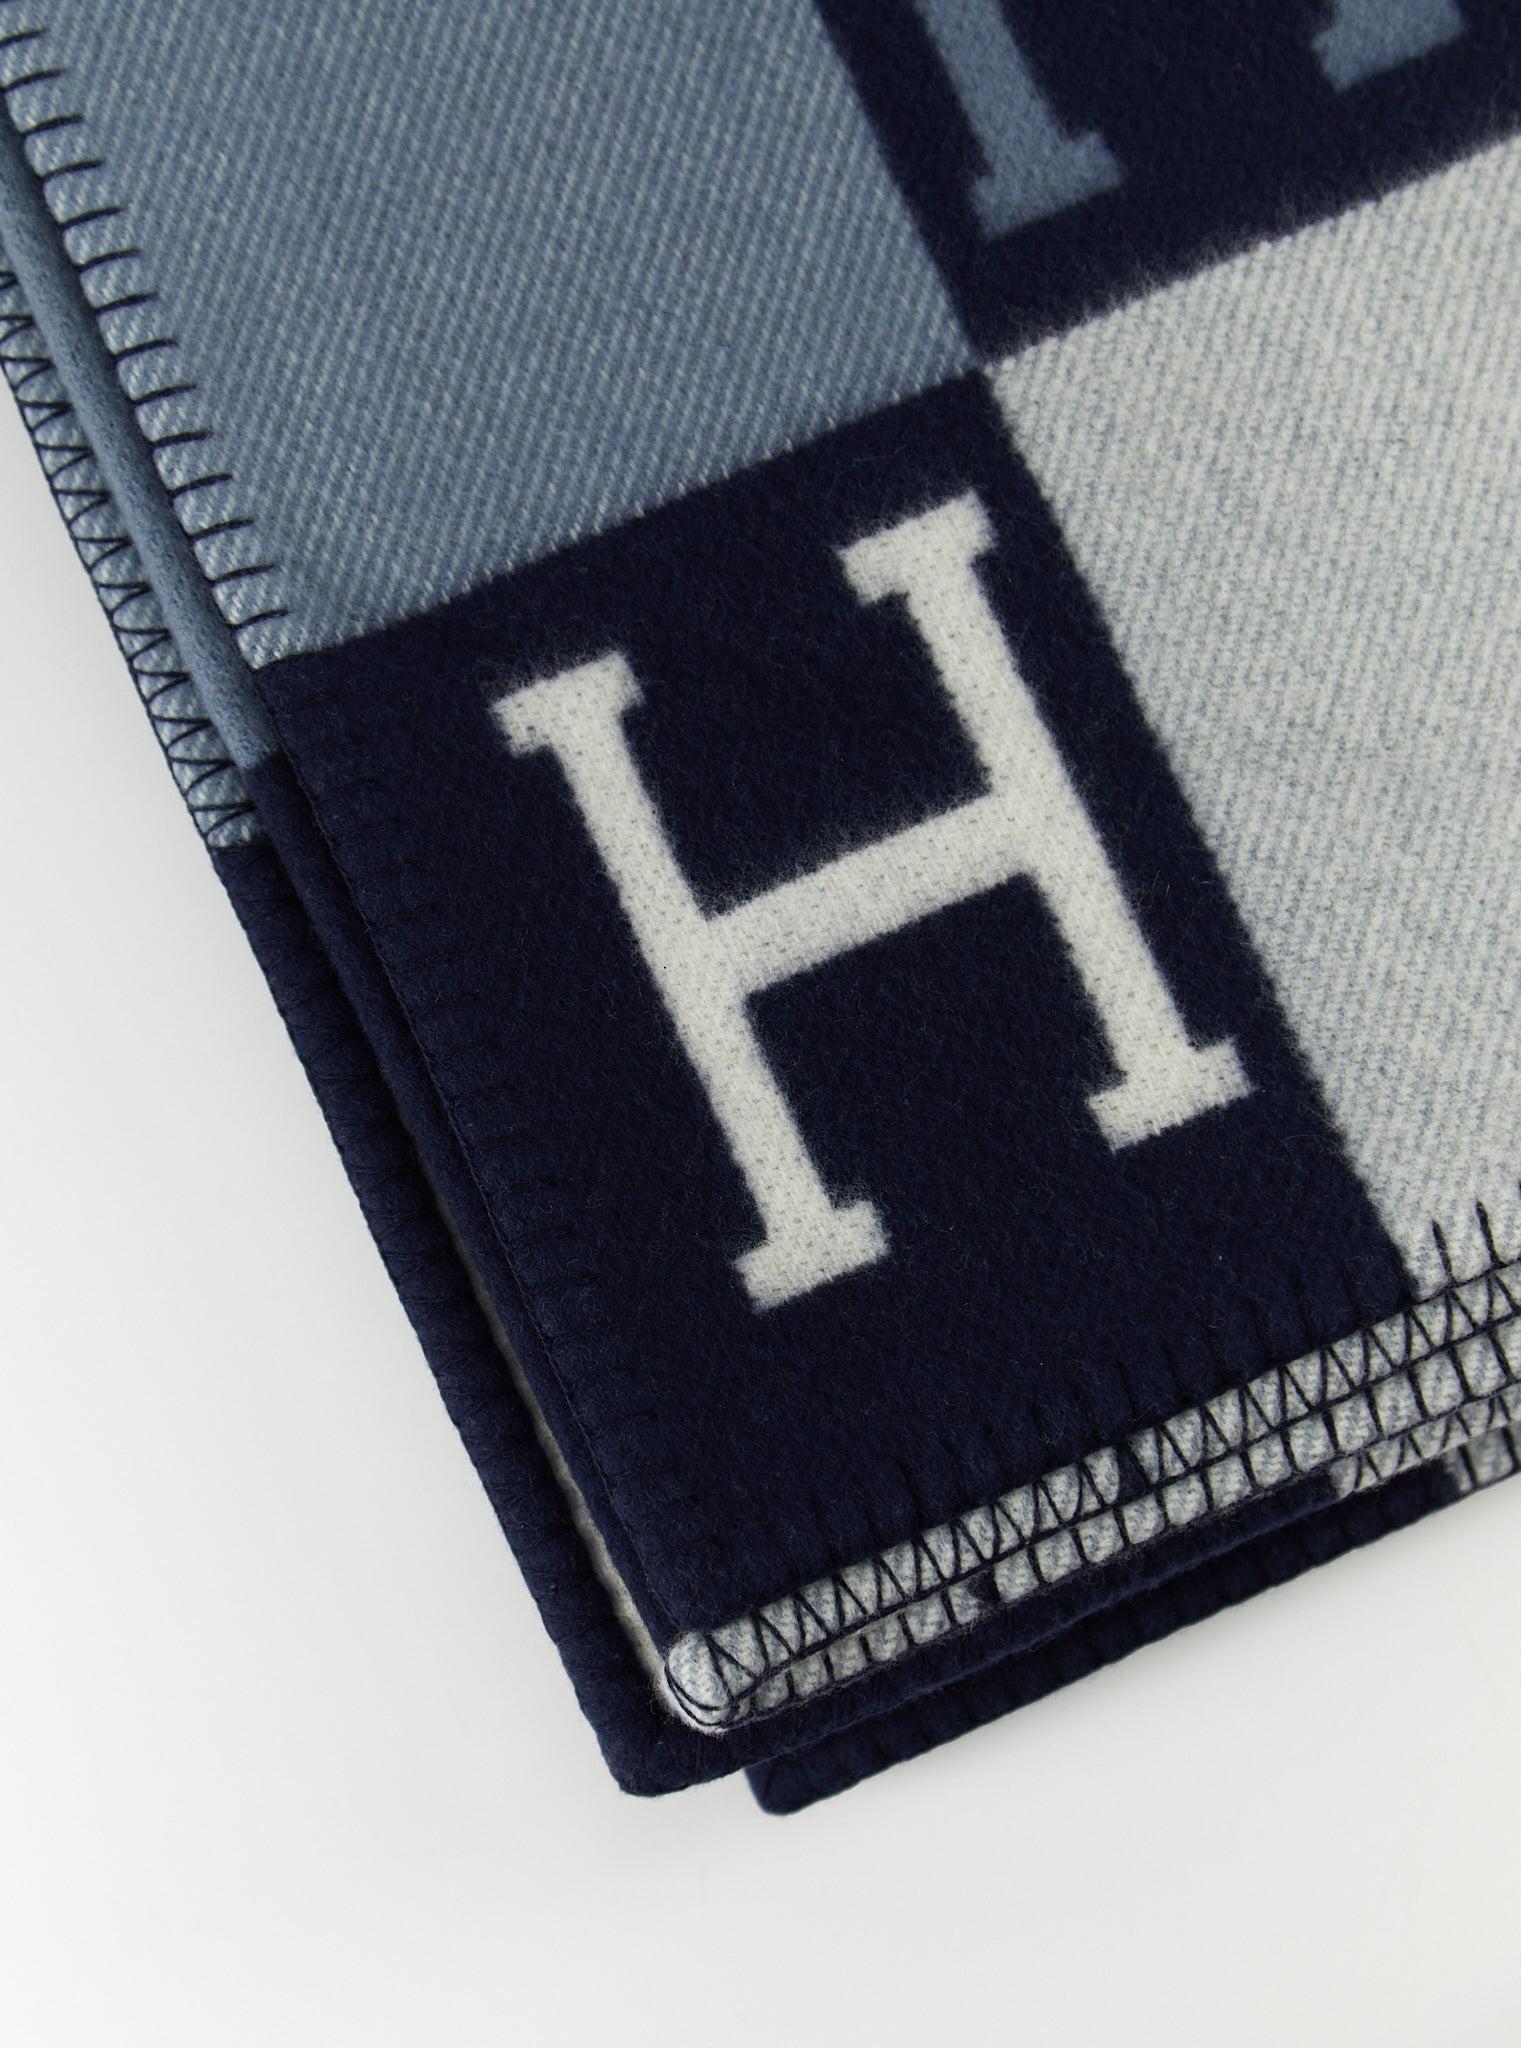 Hermès Avalon III-Decke aus Merinowolle und Kaschmir (90% Merinowolle, 10% Kaschmir)

Ecru & Caban Blau

Hergestellt in Großbritannien

Abmessungen: L 135 x H 170 cm